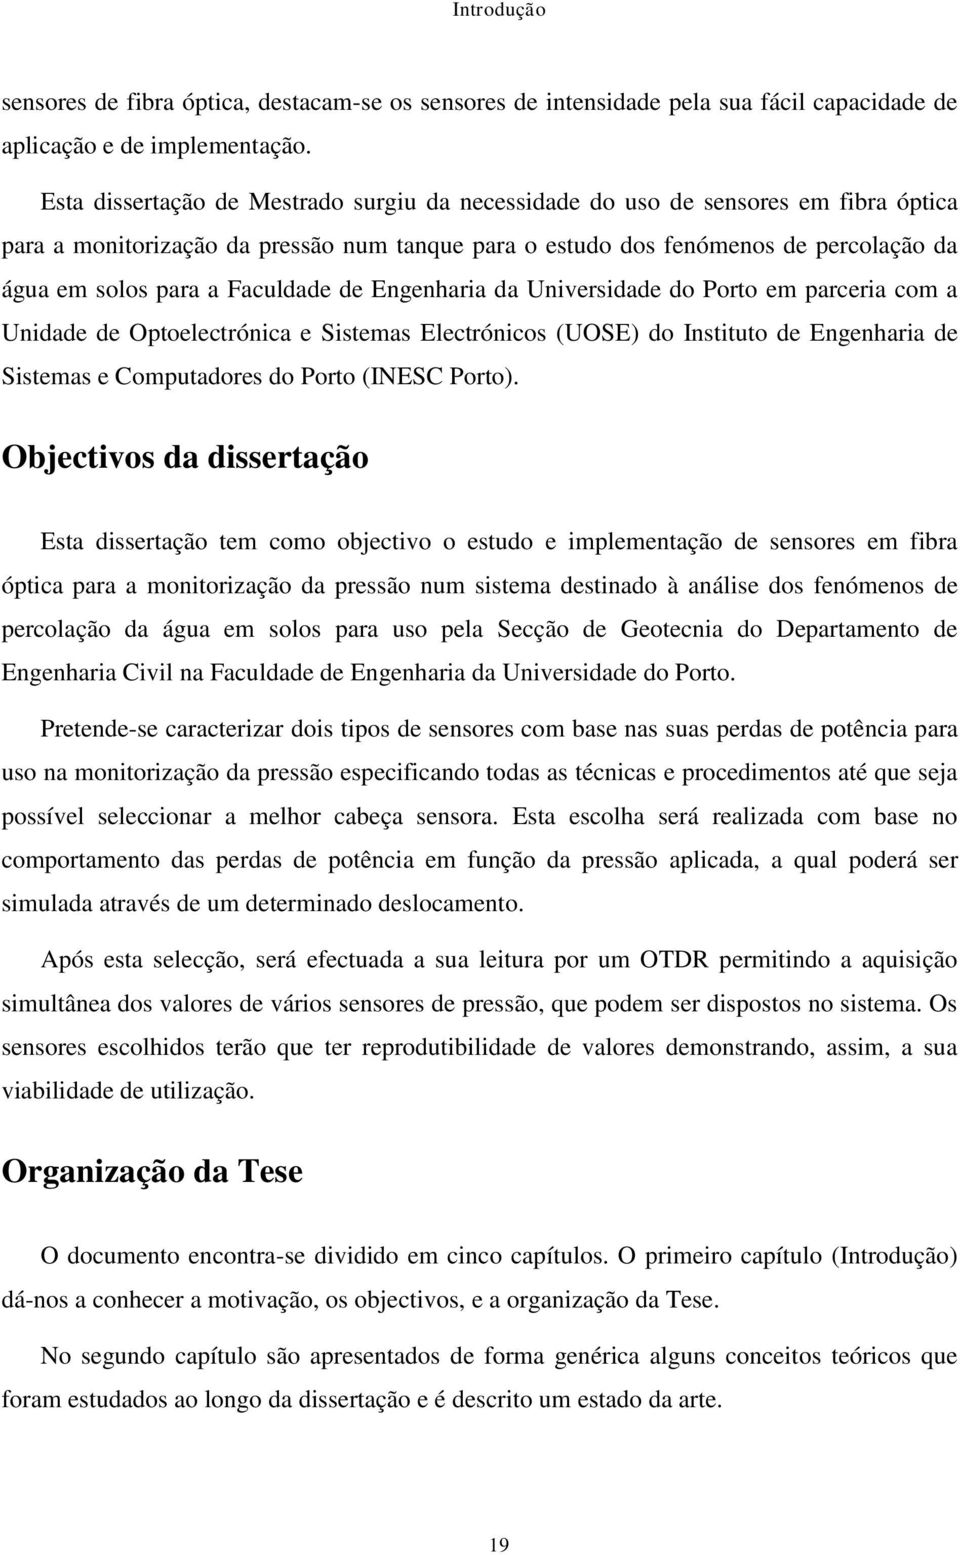 Faculdade de Engenharia da Universidade do Porto em parceria com a Unidade de Optoelectrónica e Sistemas Electrónicos (UOSE) do Instituto de Engenharia de Sistemas e Computadores do Porto (INESC